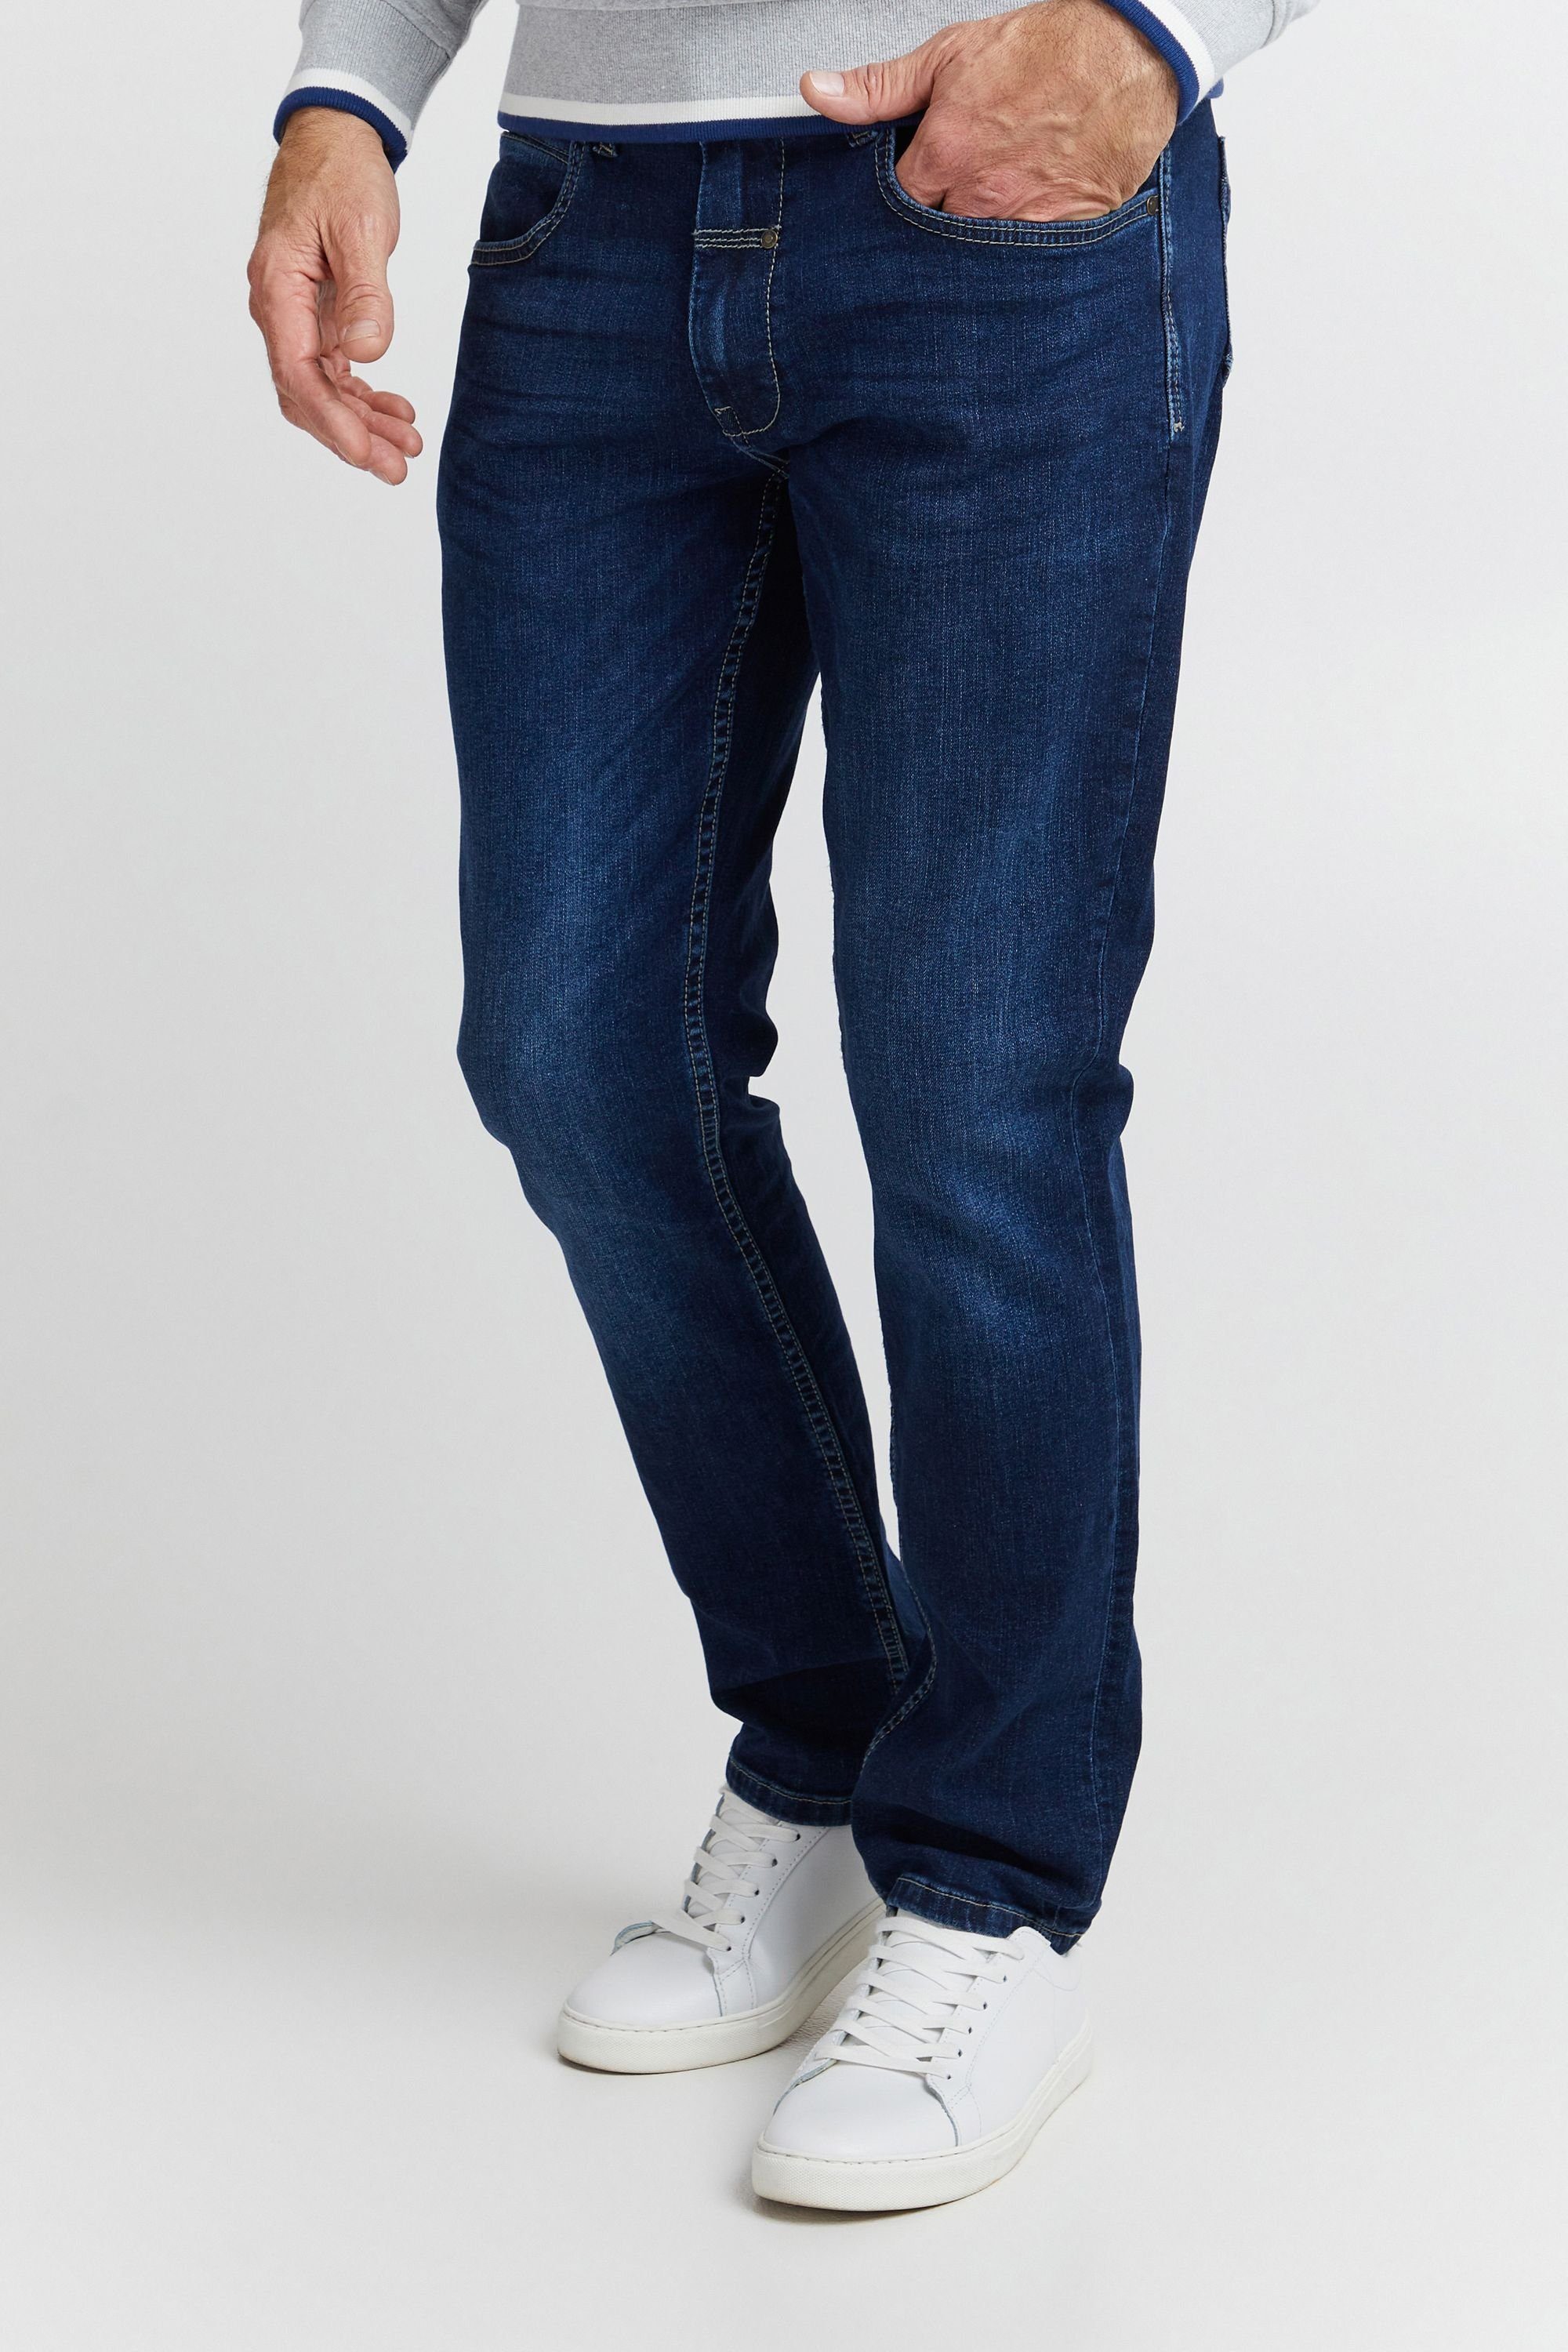 FQRoman Denim FQ1924 dark blue FQ1924 5-Pocket-Jeans